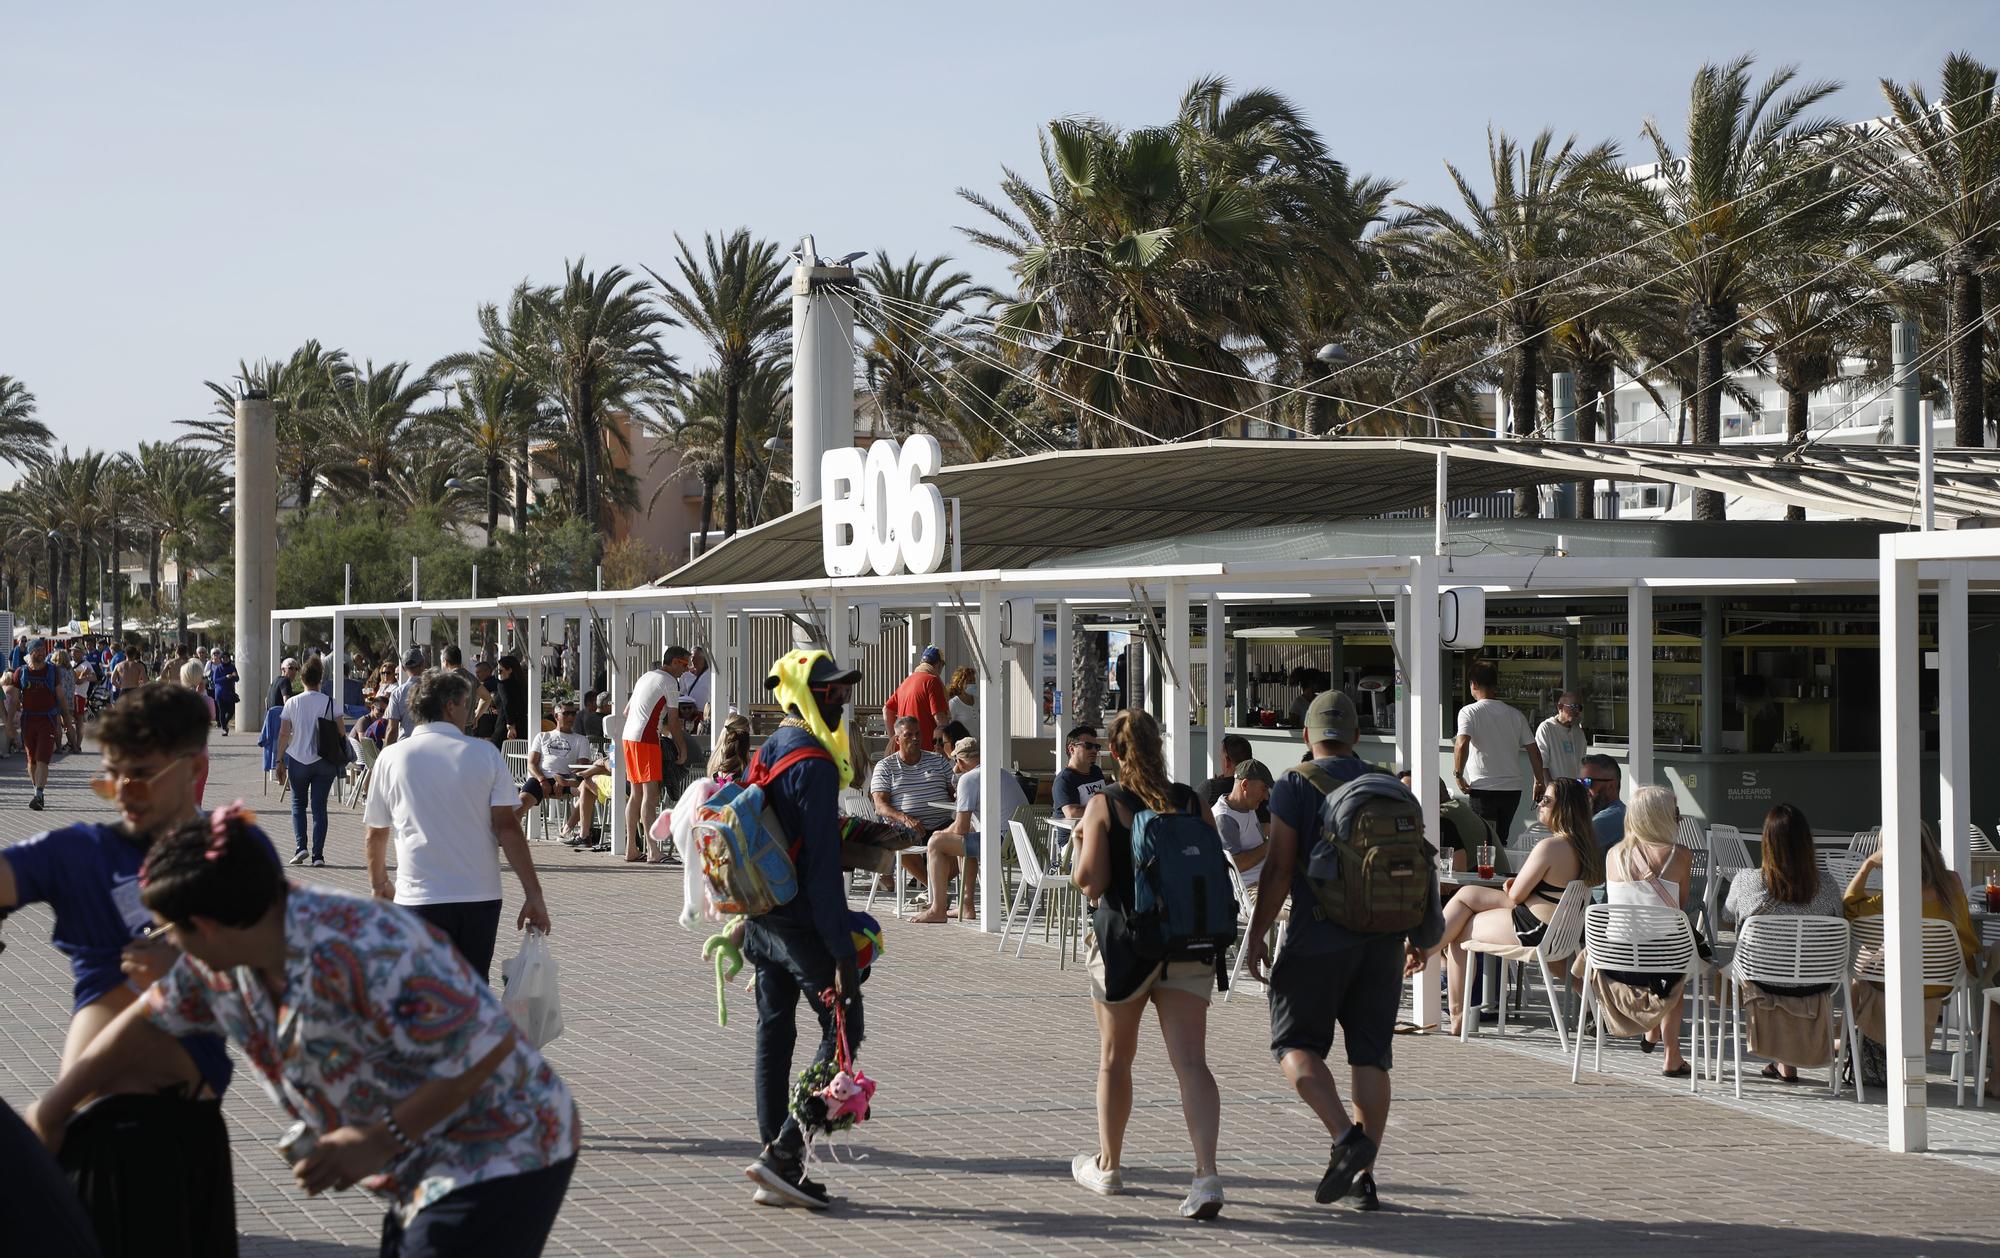 Sonne, Bier und Baden: So sieht es derzeit an der Playa de Palma auf Mallorca aus